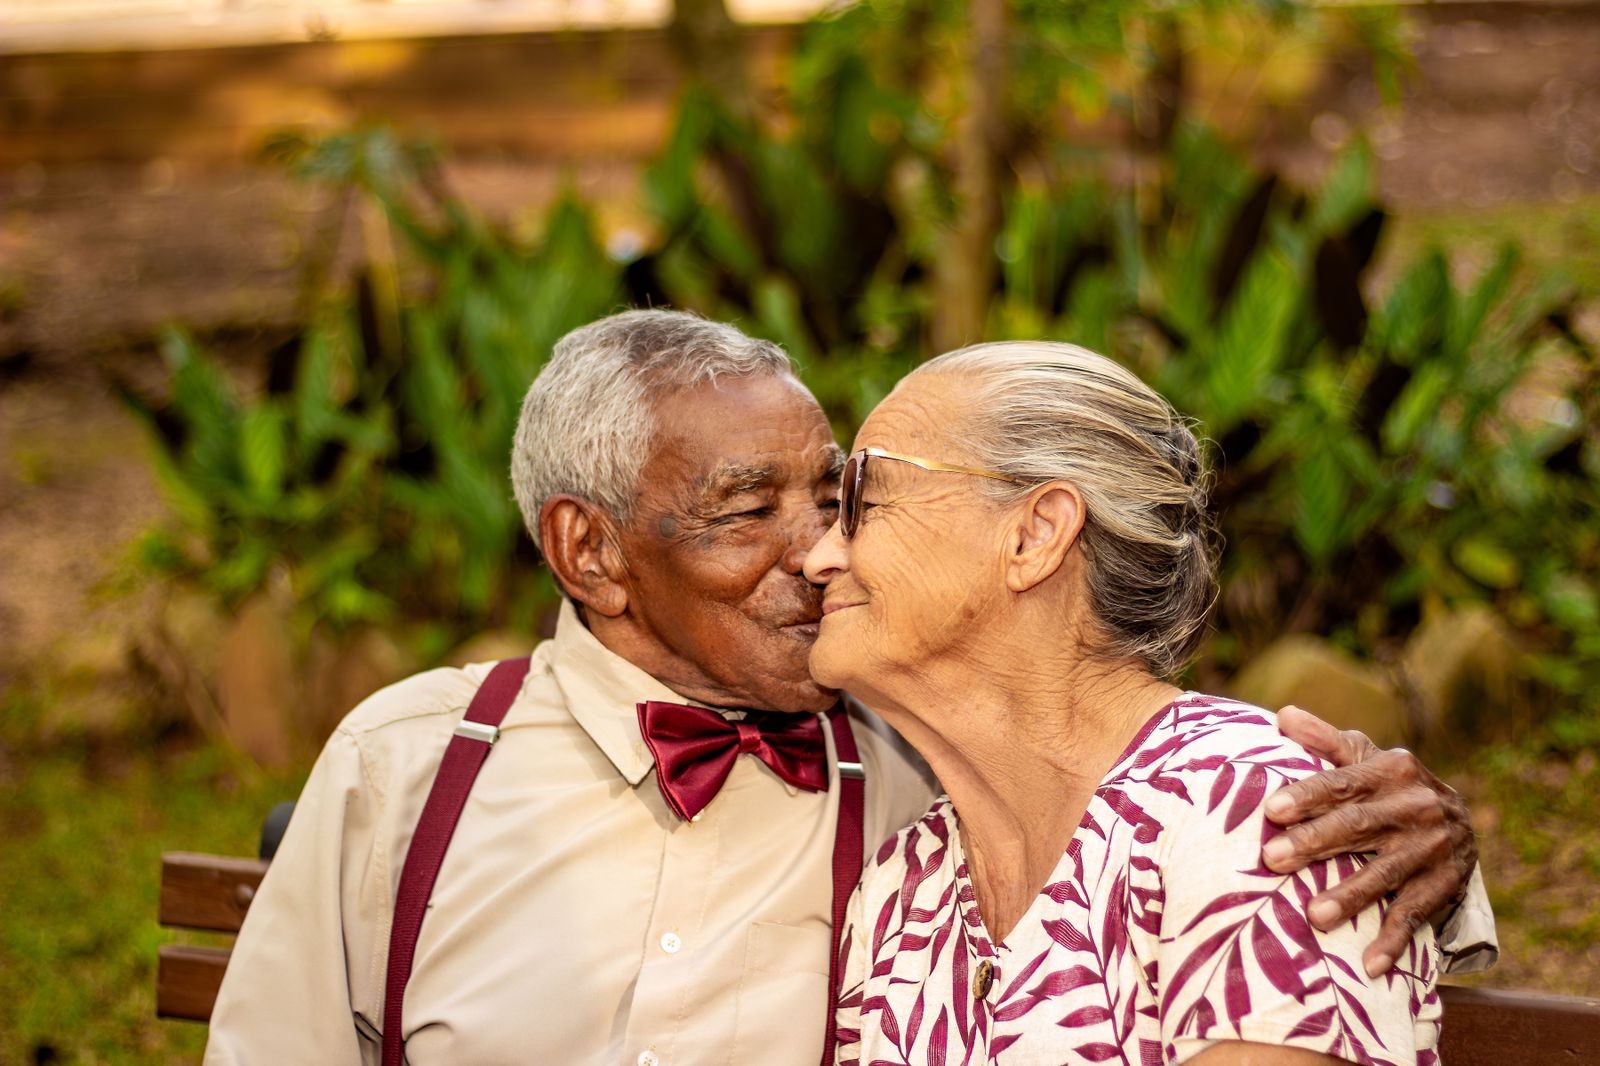 Há 66 anos juntos, casal que fugiu para viver relacionamento fala sobre 'segredo' para amor duradouro: 'Respeito e companheirismo'